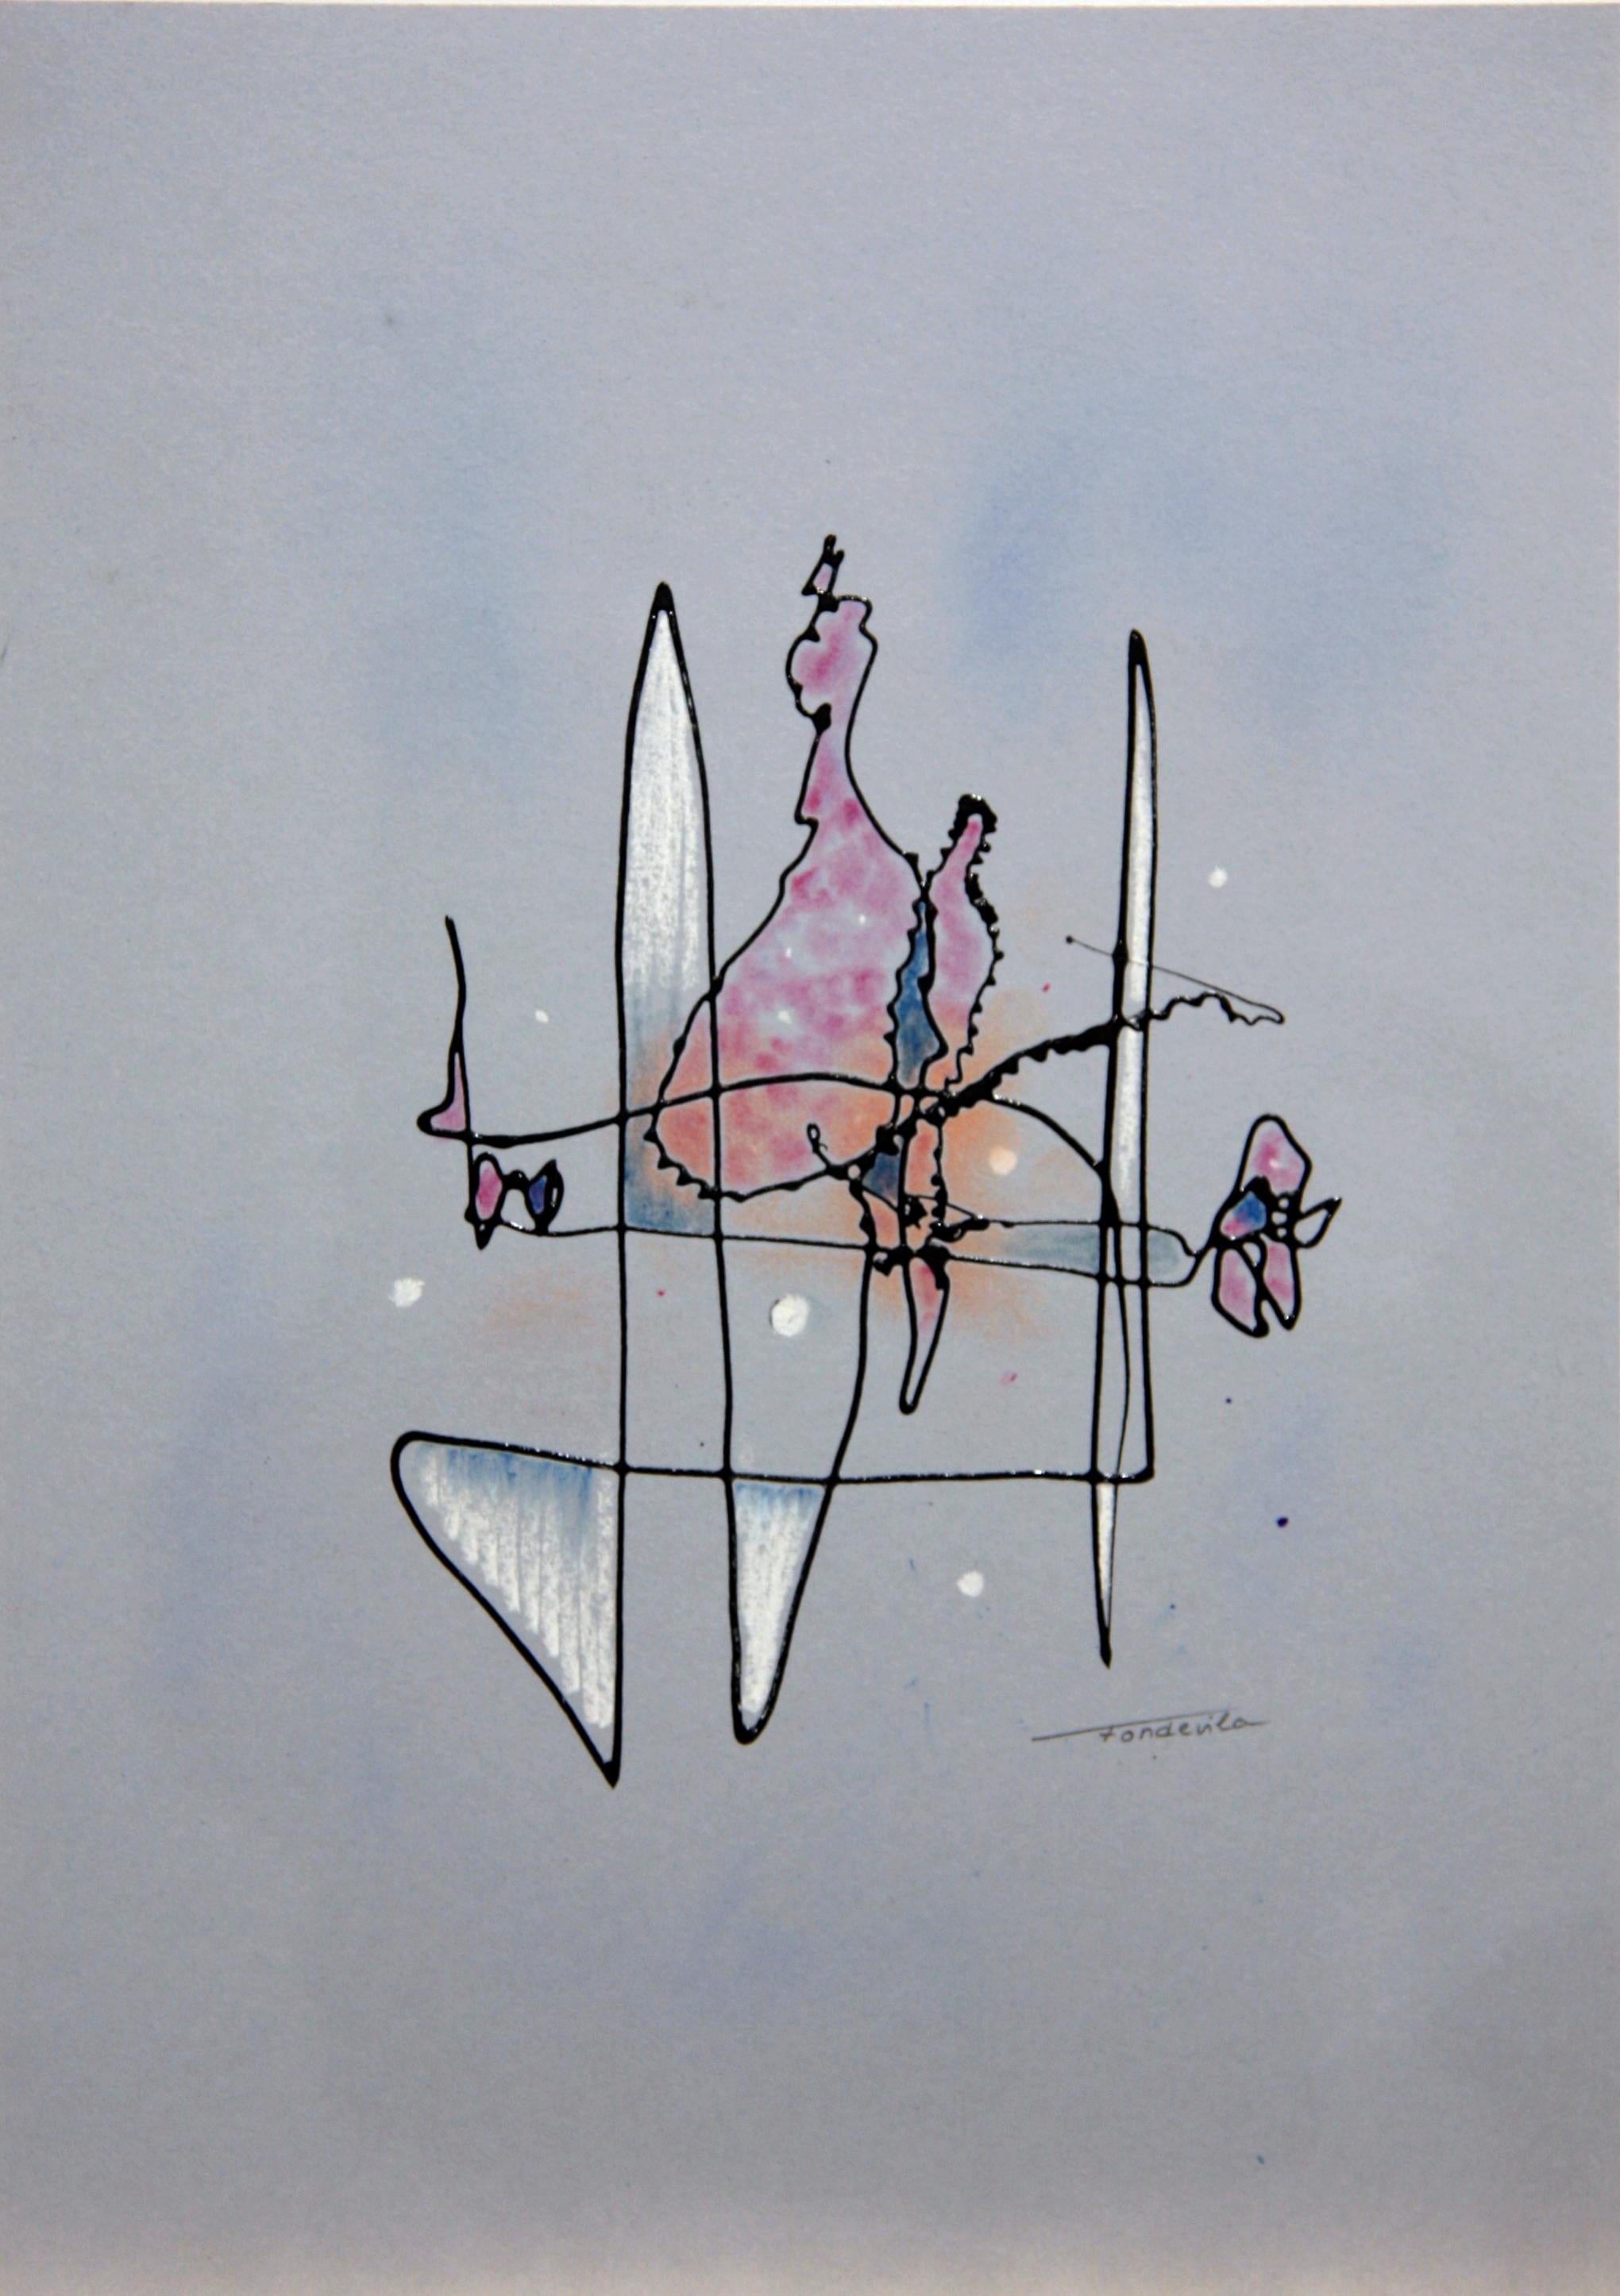 José Antonio Fondevila Abstract Drawing - Equilibrio flotante